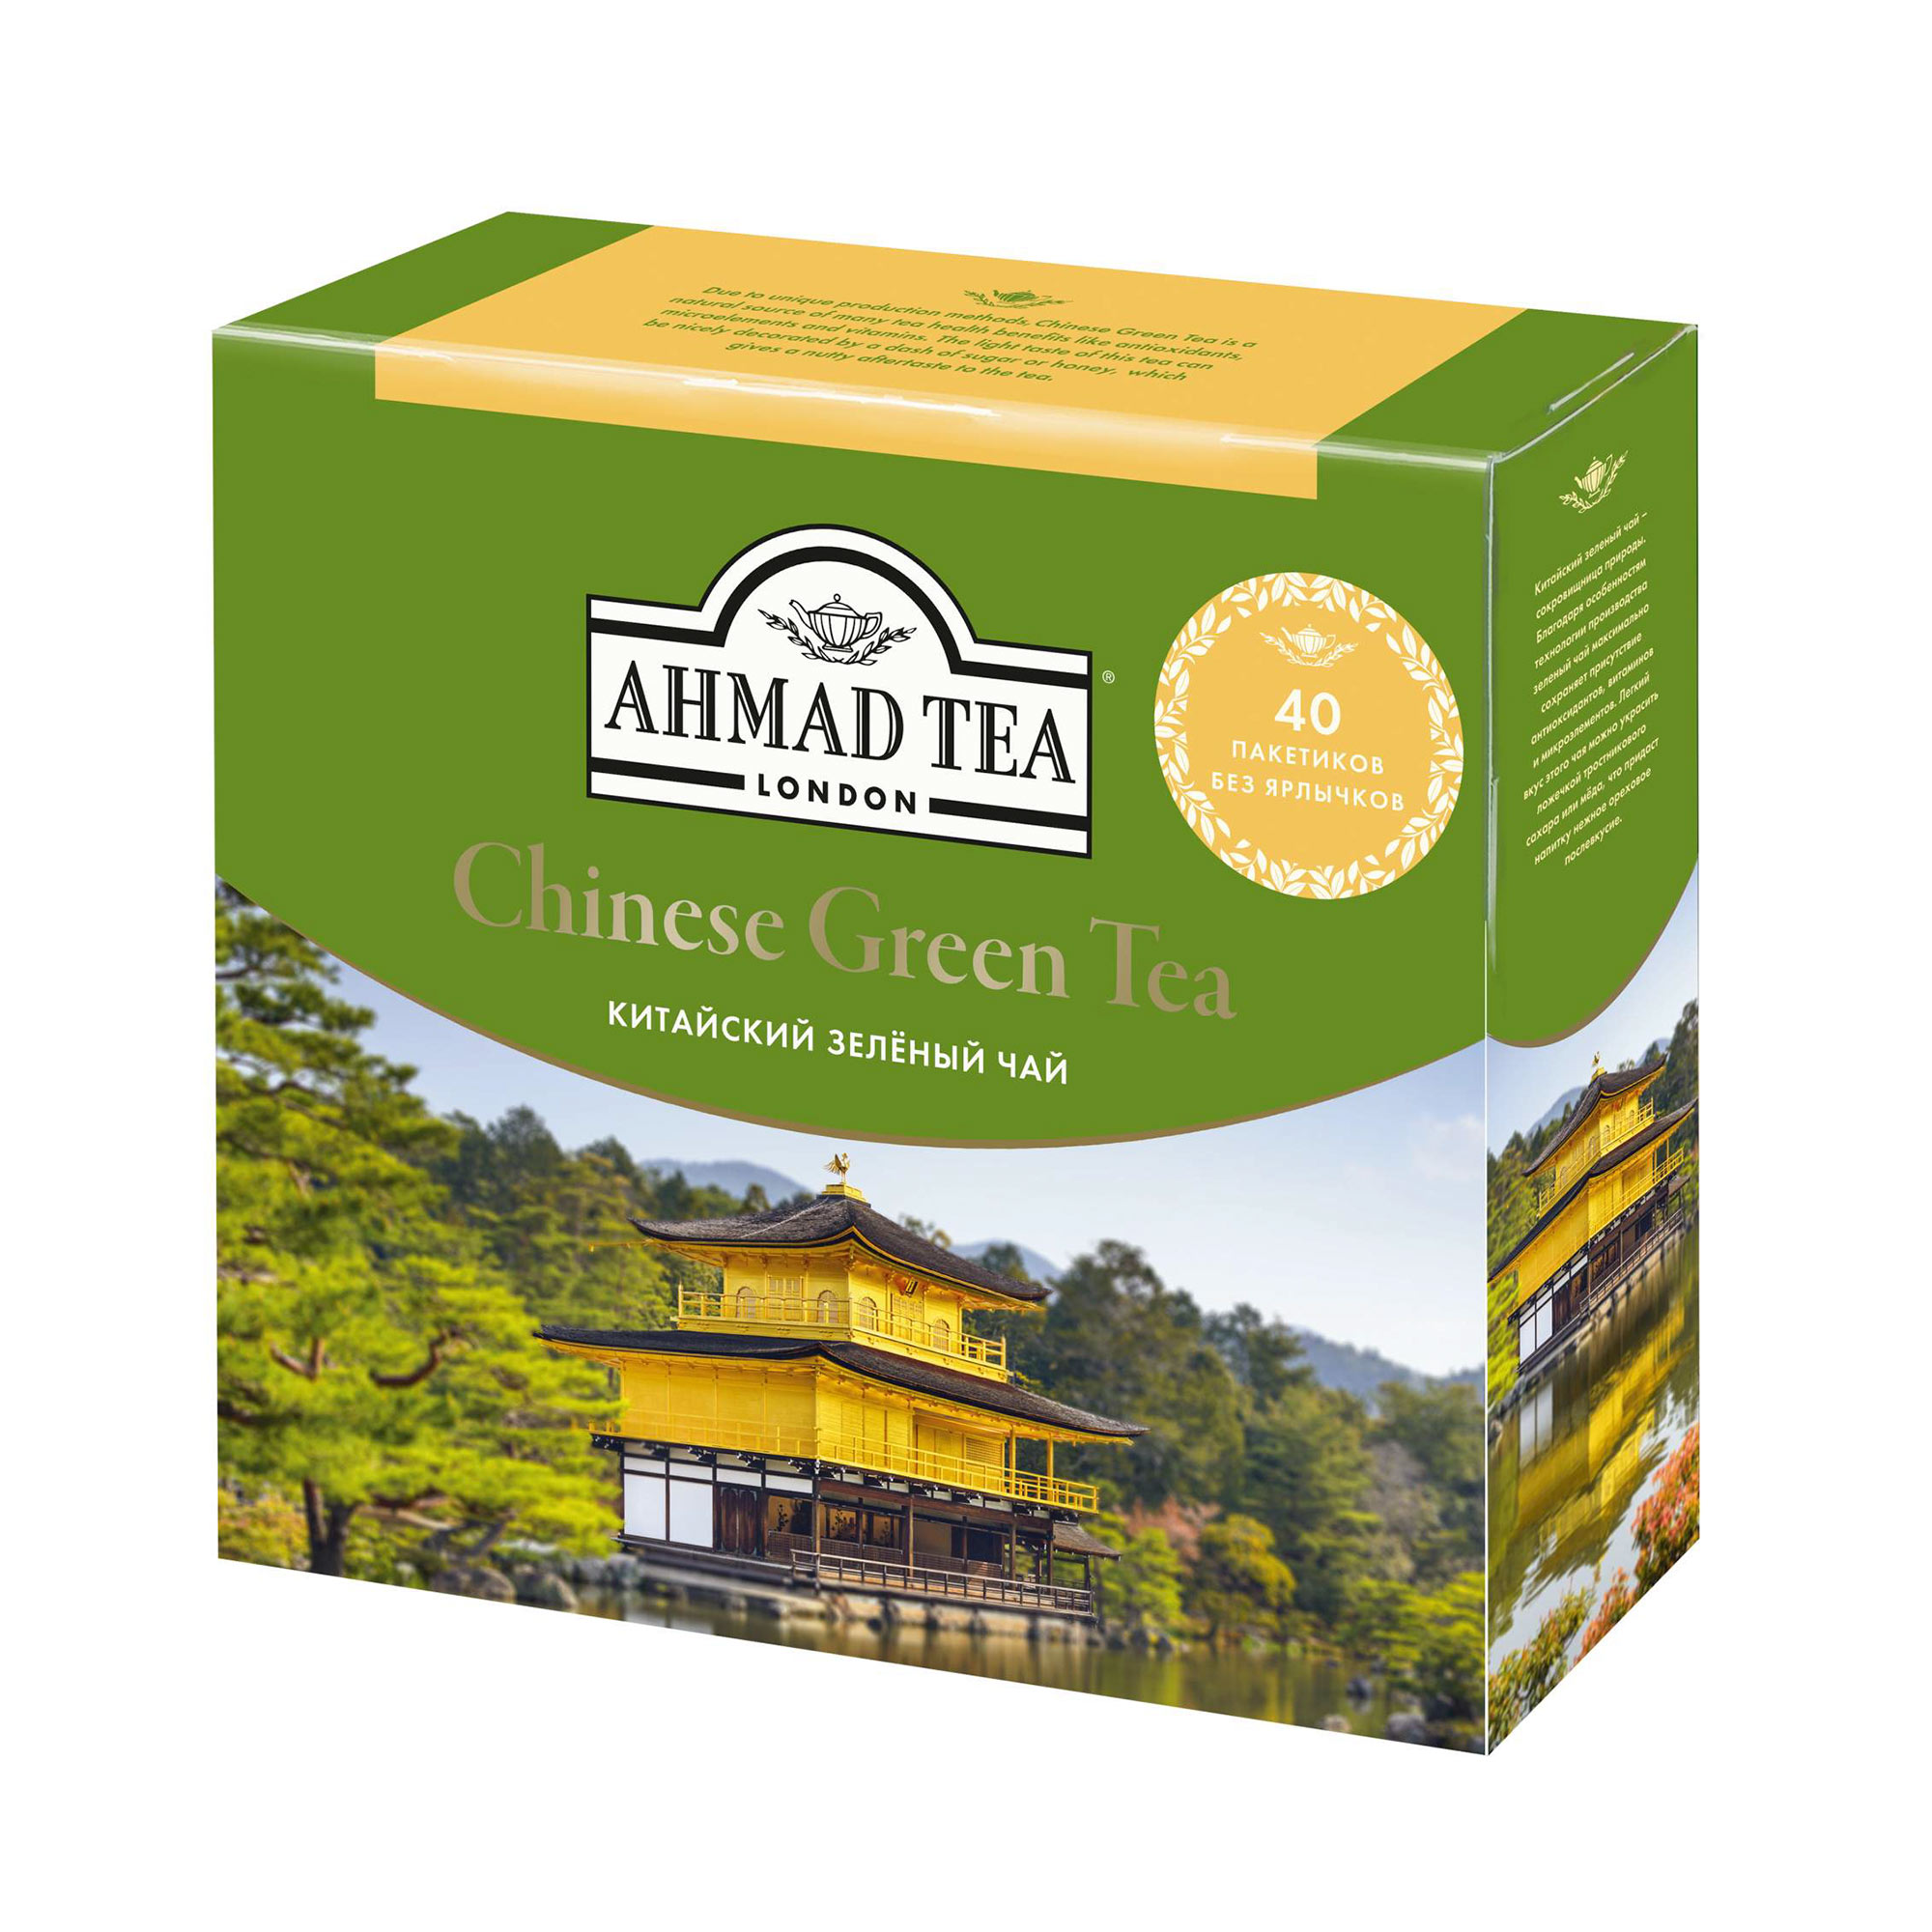 цена Чай зеленый Ahmad Tea Китайский 40х2 г